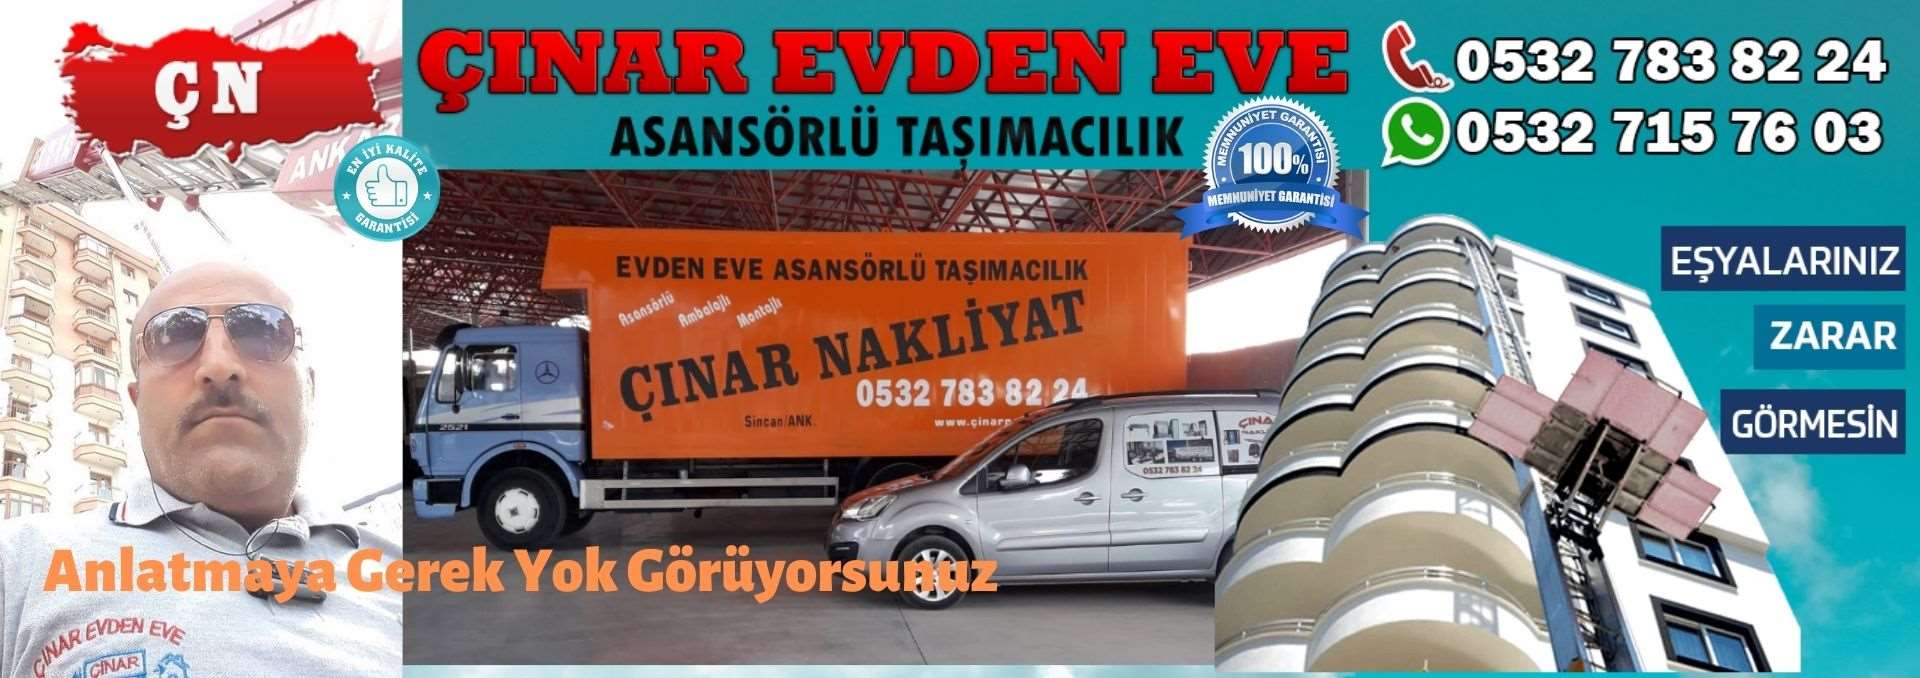 Ankara Kalecik Evden Eve Asansörlü Ev Eşyası Taşıma 0532 715 76 03